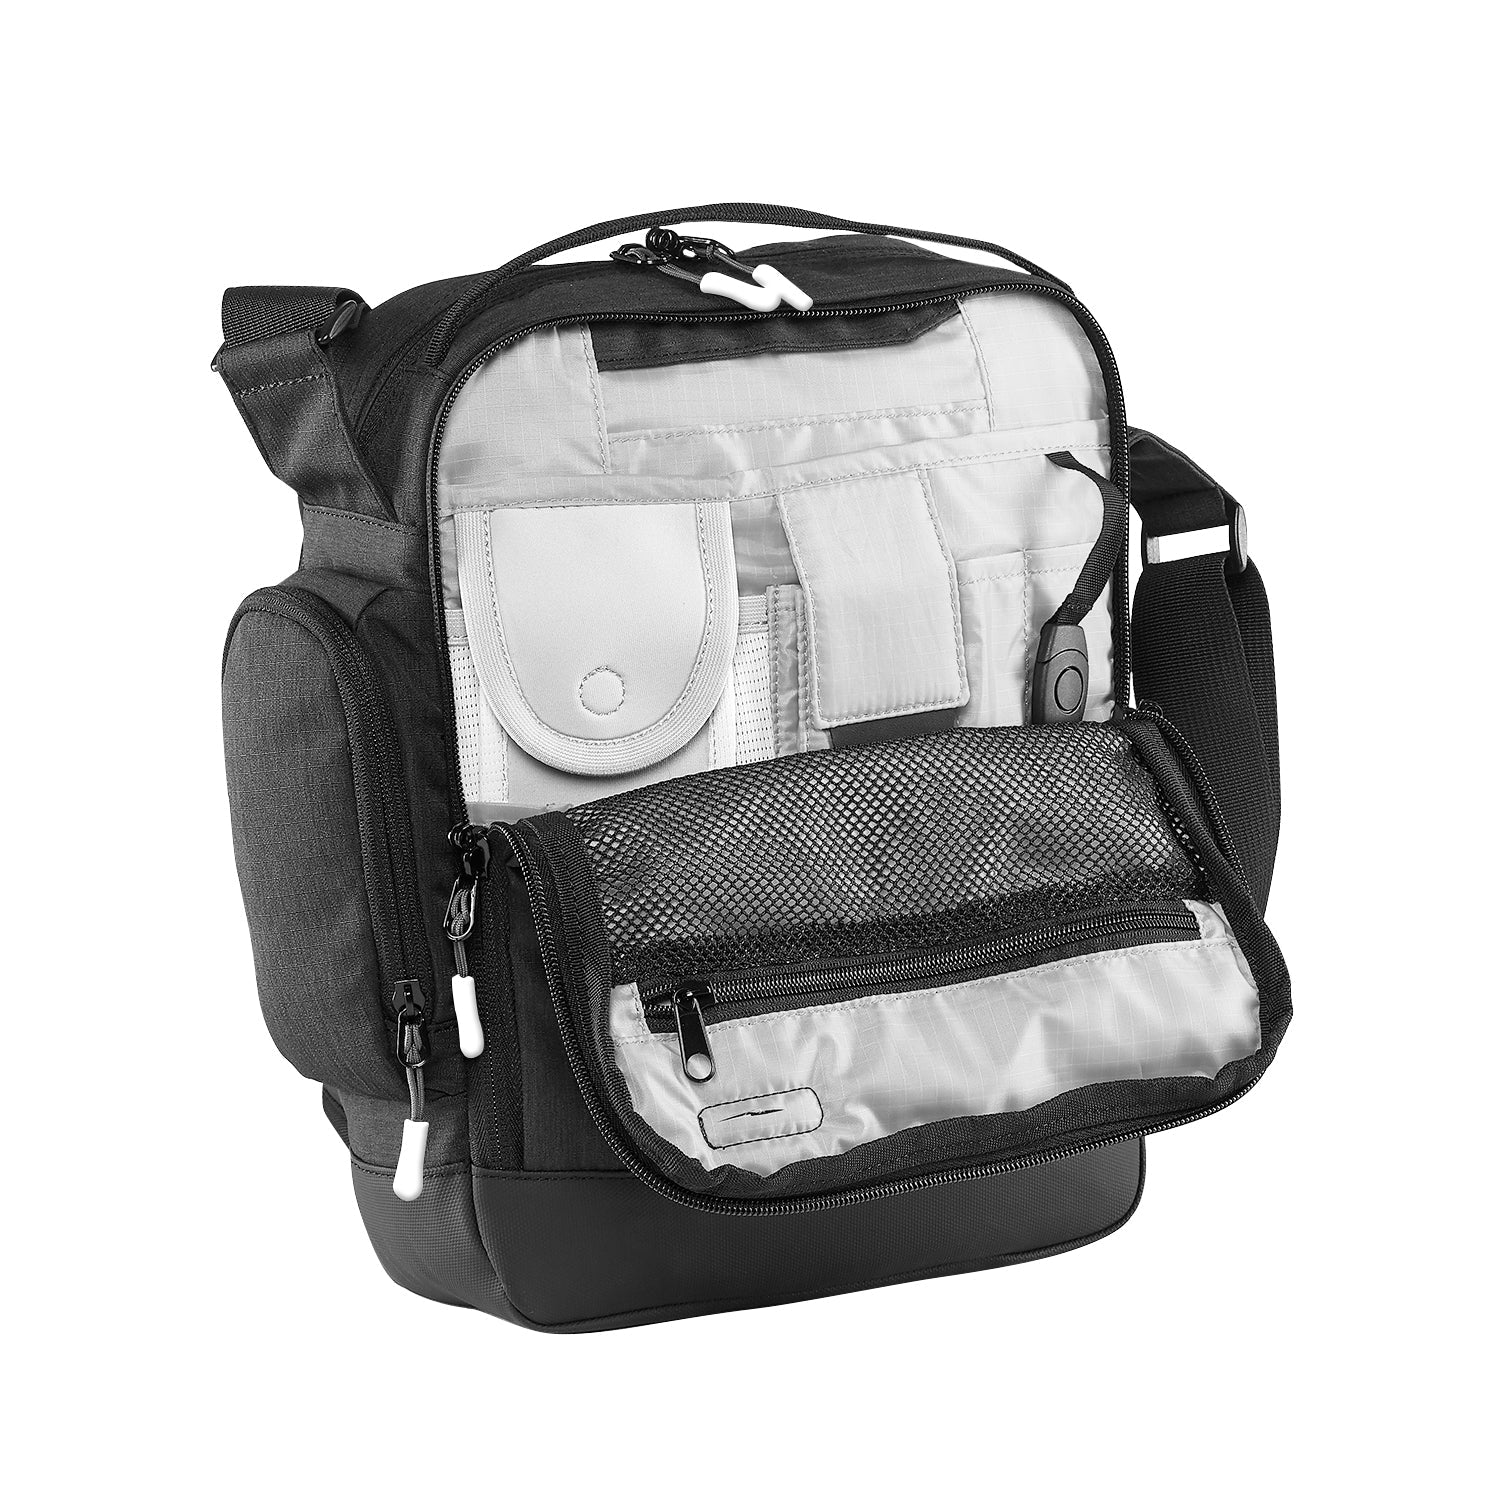 Caribee - Departure Bag 2.0 Travel Shoulder Bag-3